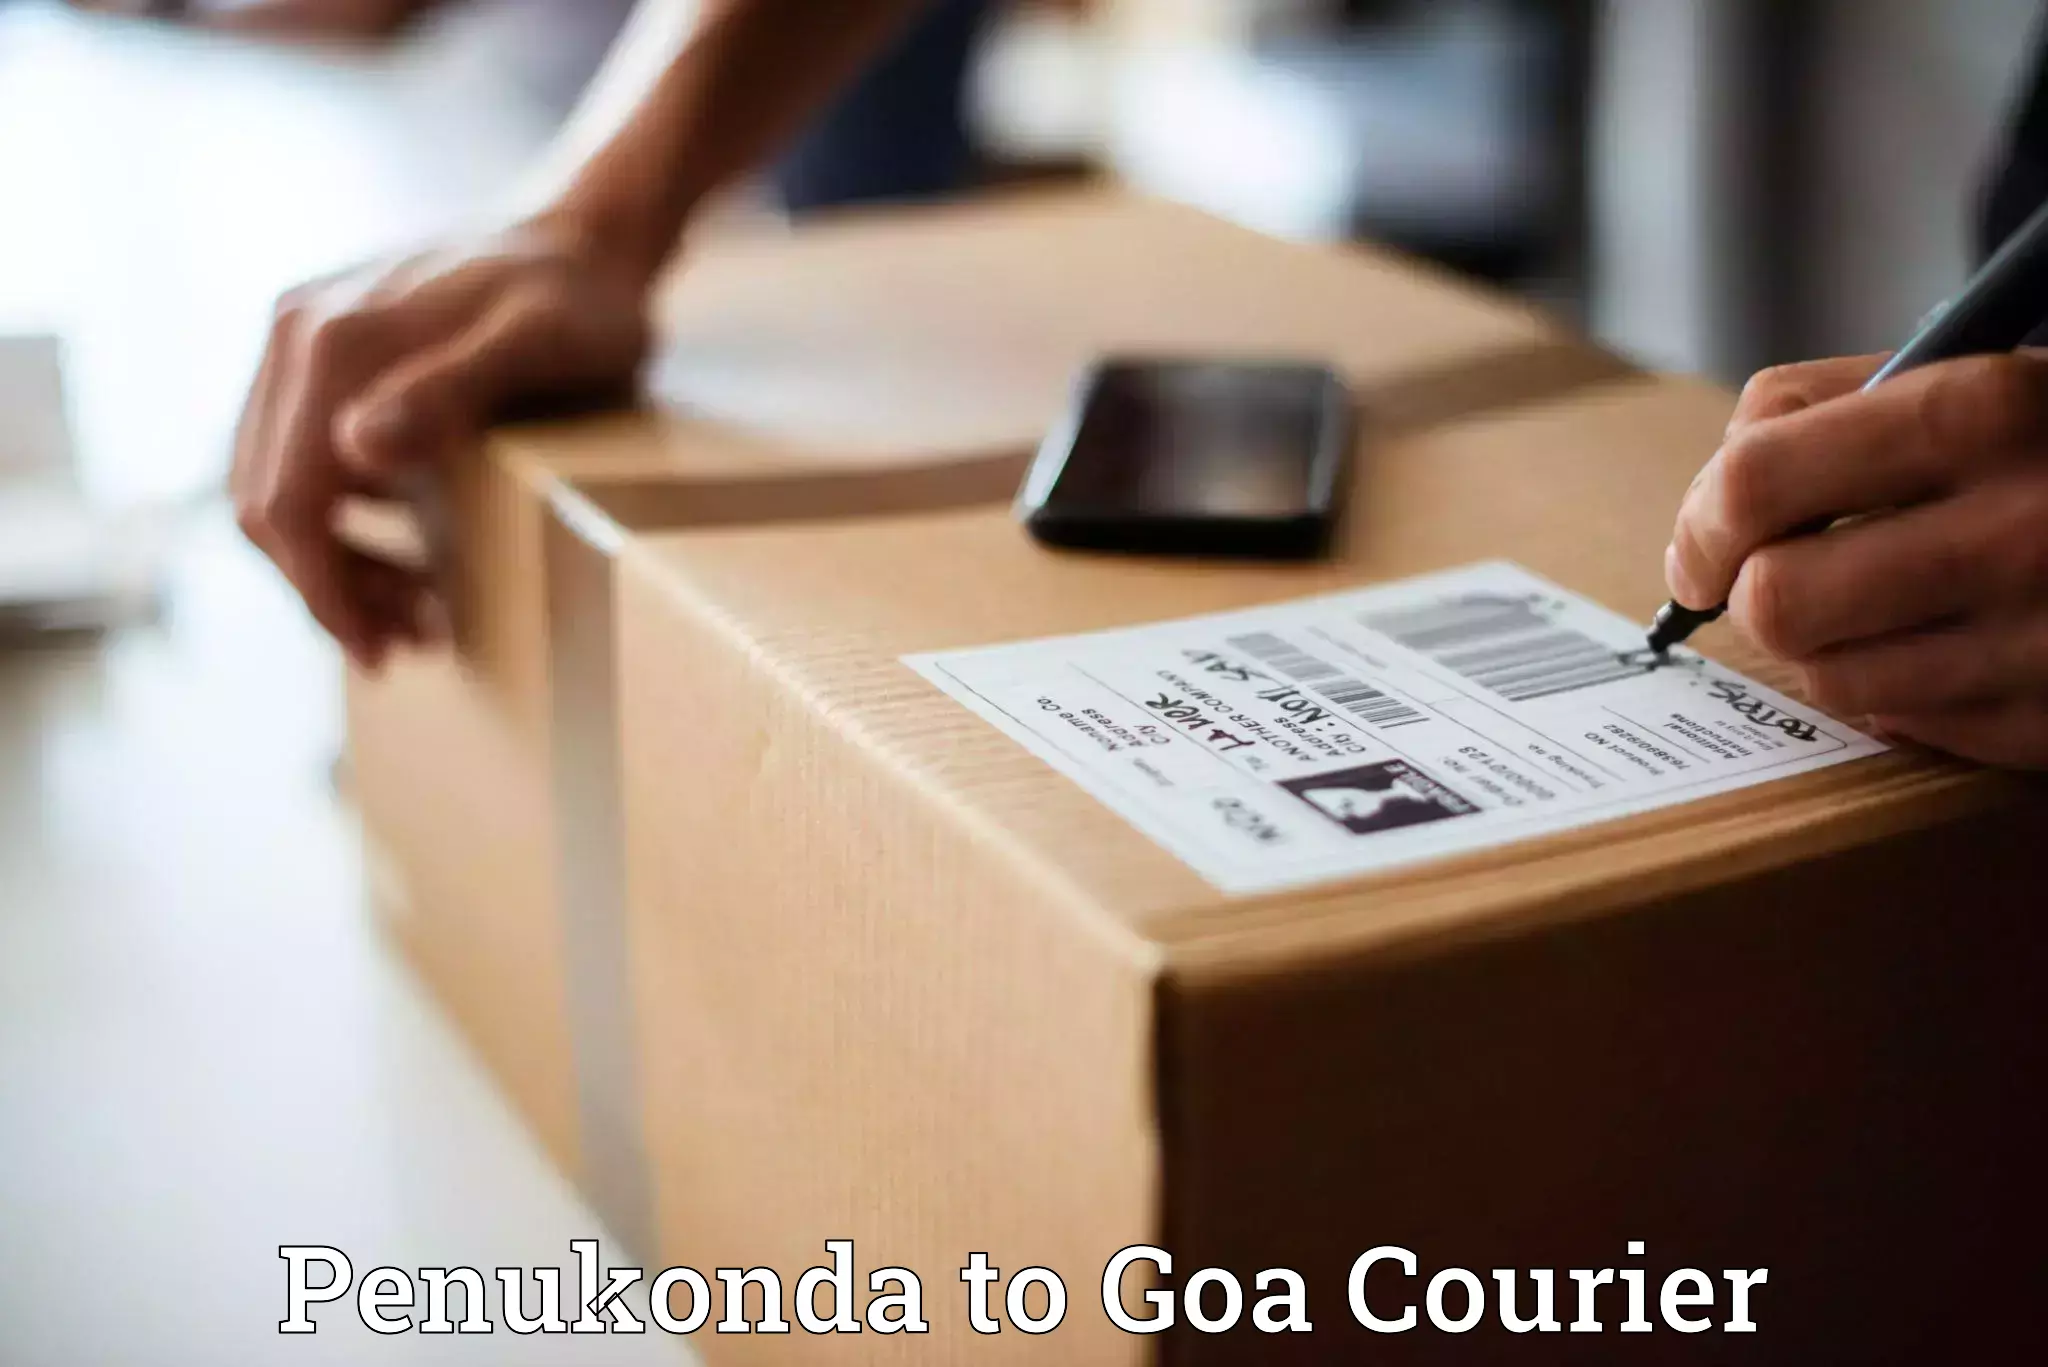 Optimized shipping routes Penukonda to Goa